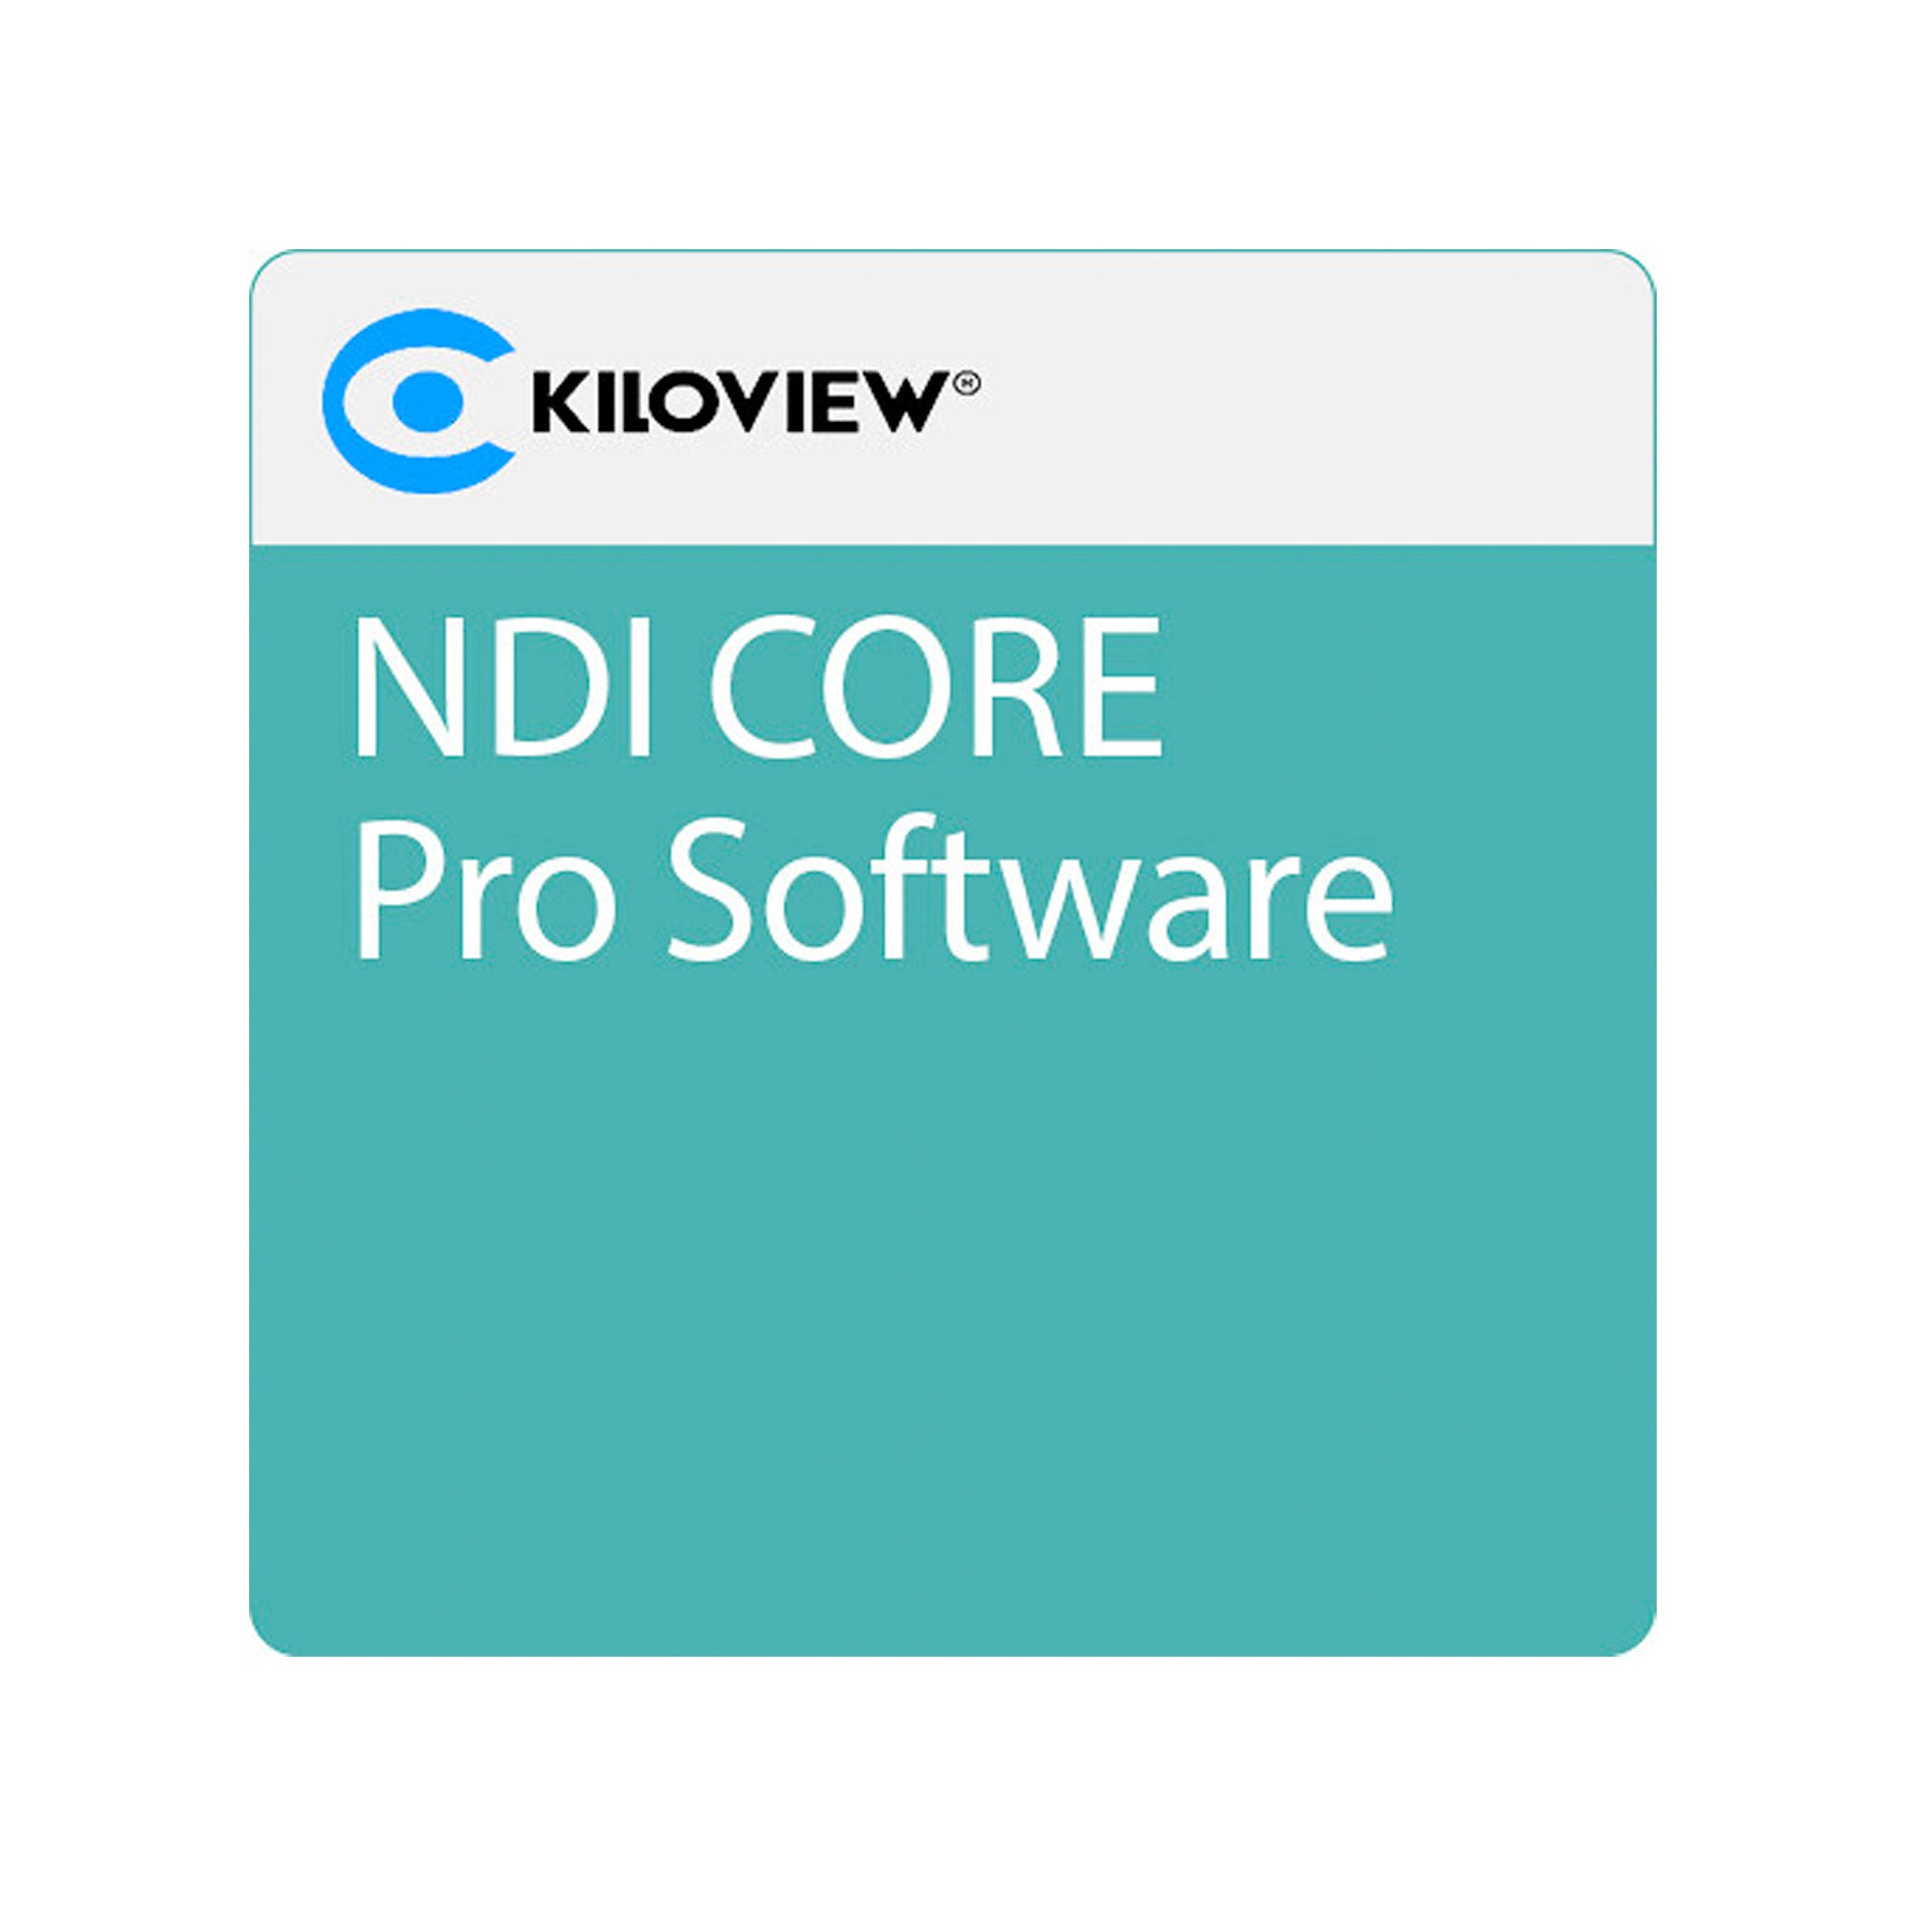 Kiloview NDI CORE Pro software